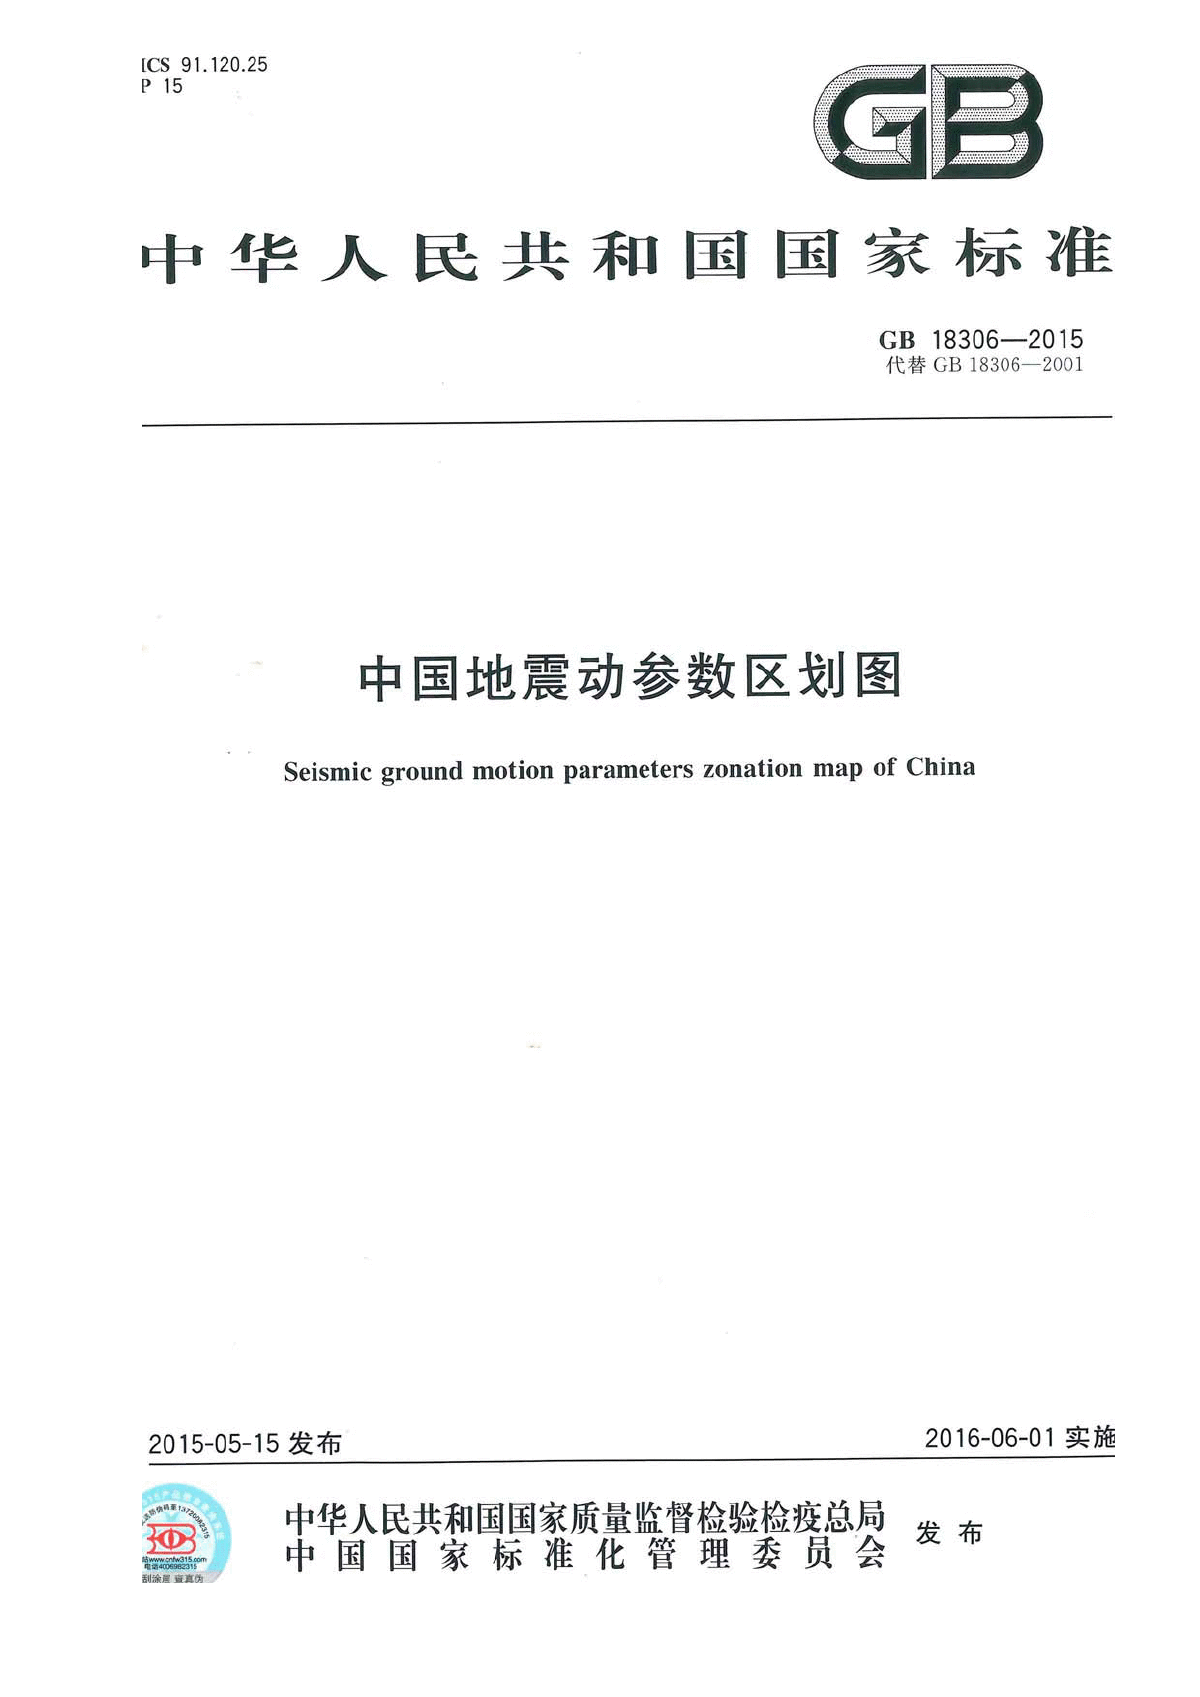 GB18306-2015最新版《中国地震动参数区划图》